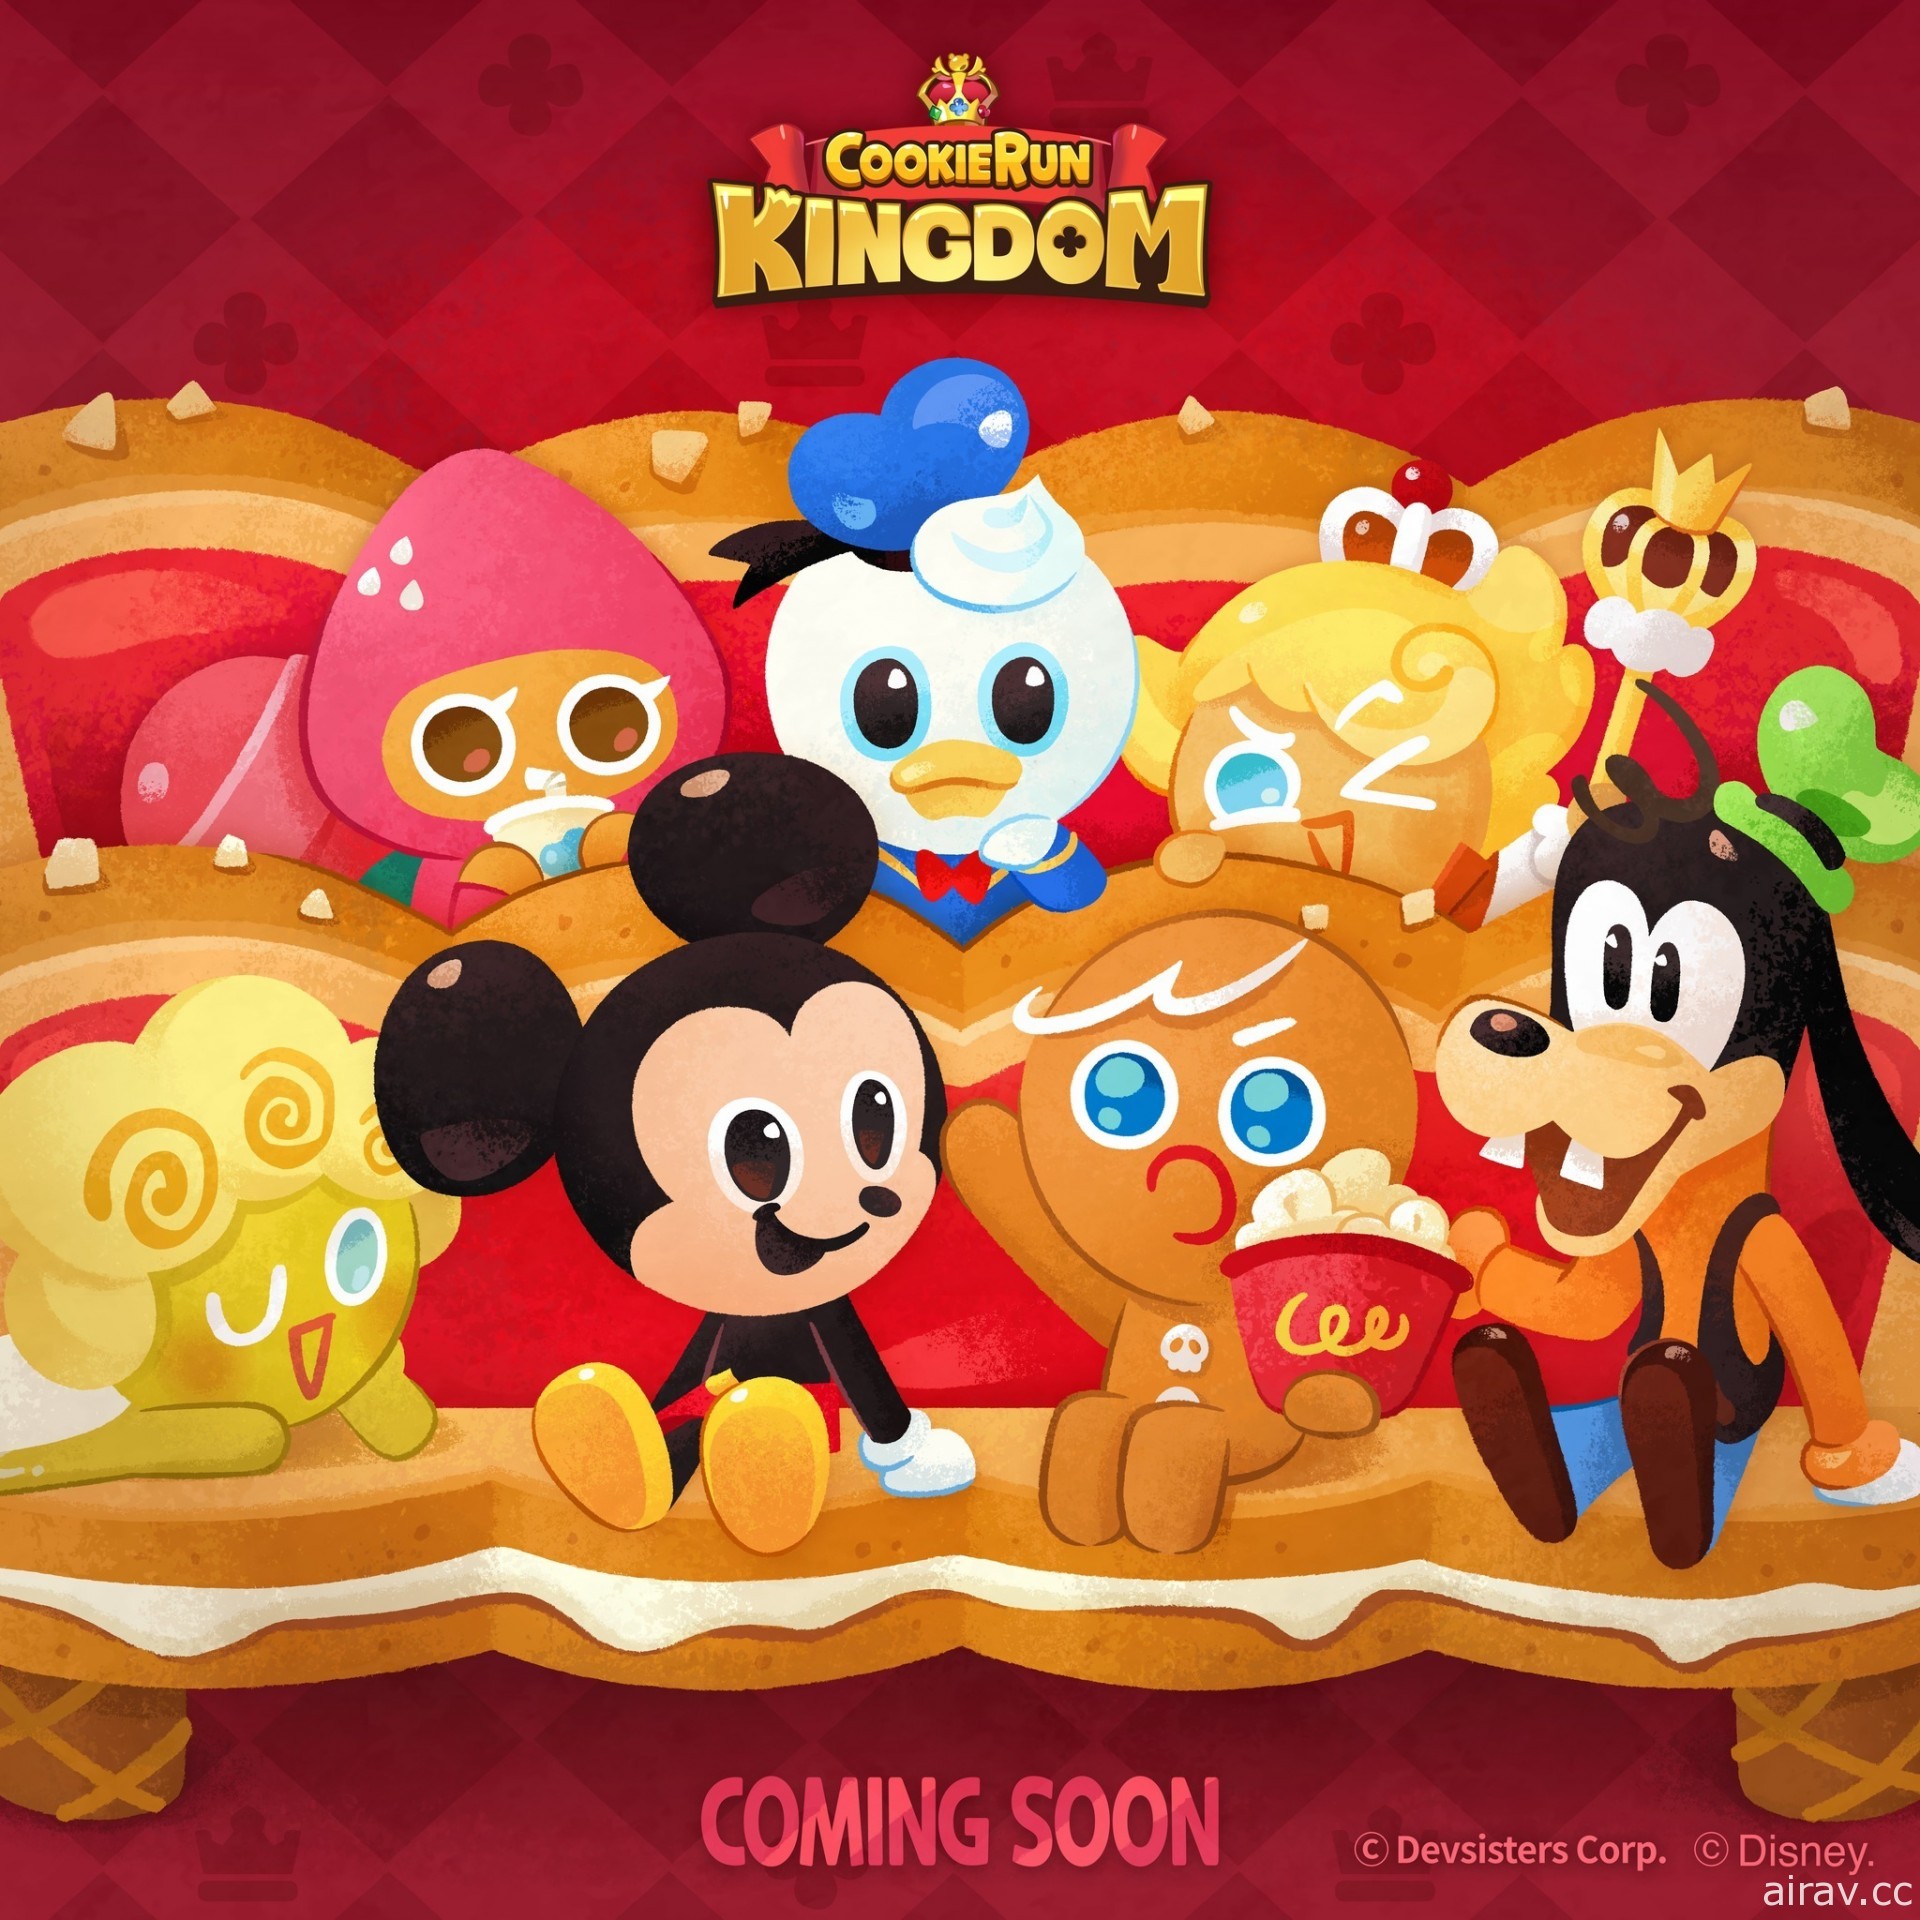 《姜饼人王国》预告将与迪士尼展开合作 米奇、唐老鸭等迪士尼饼干将现身饼国